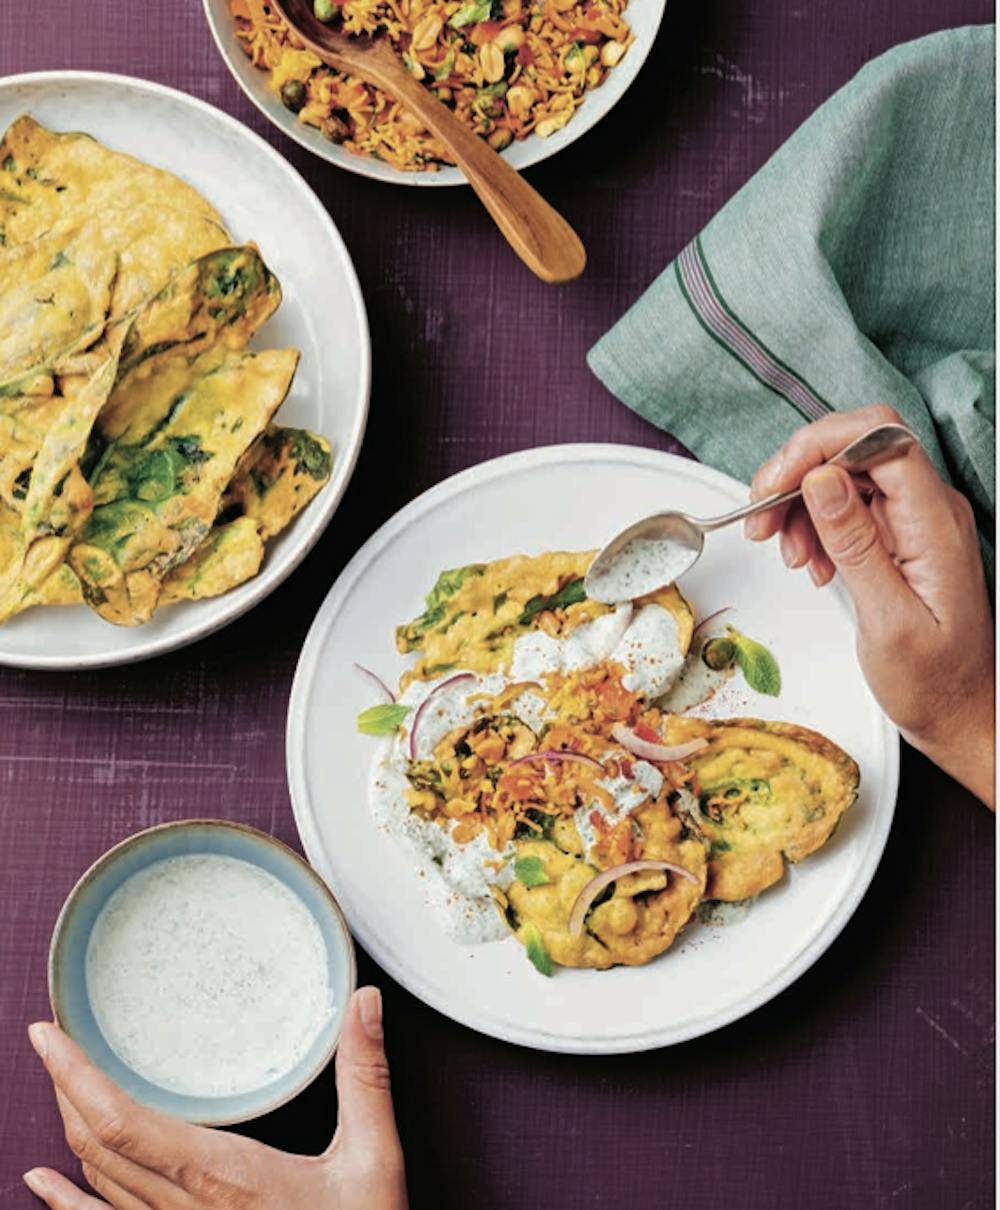 Recettes du livre de cuisine "Inde - Balades gourmandes, recettes et art de vivre" de Sandra Salmandjee